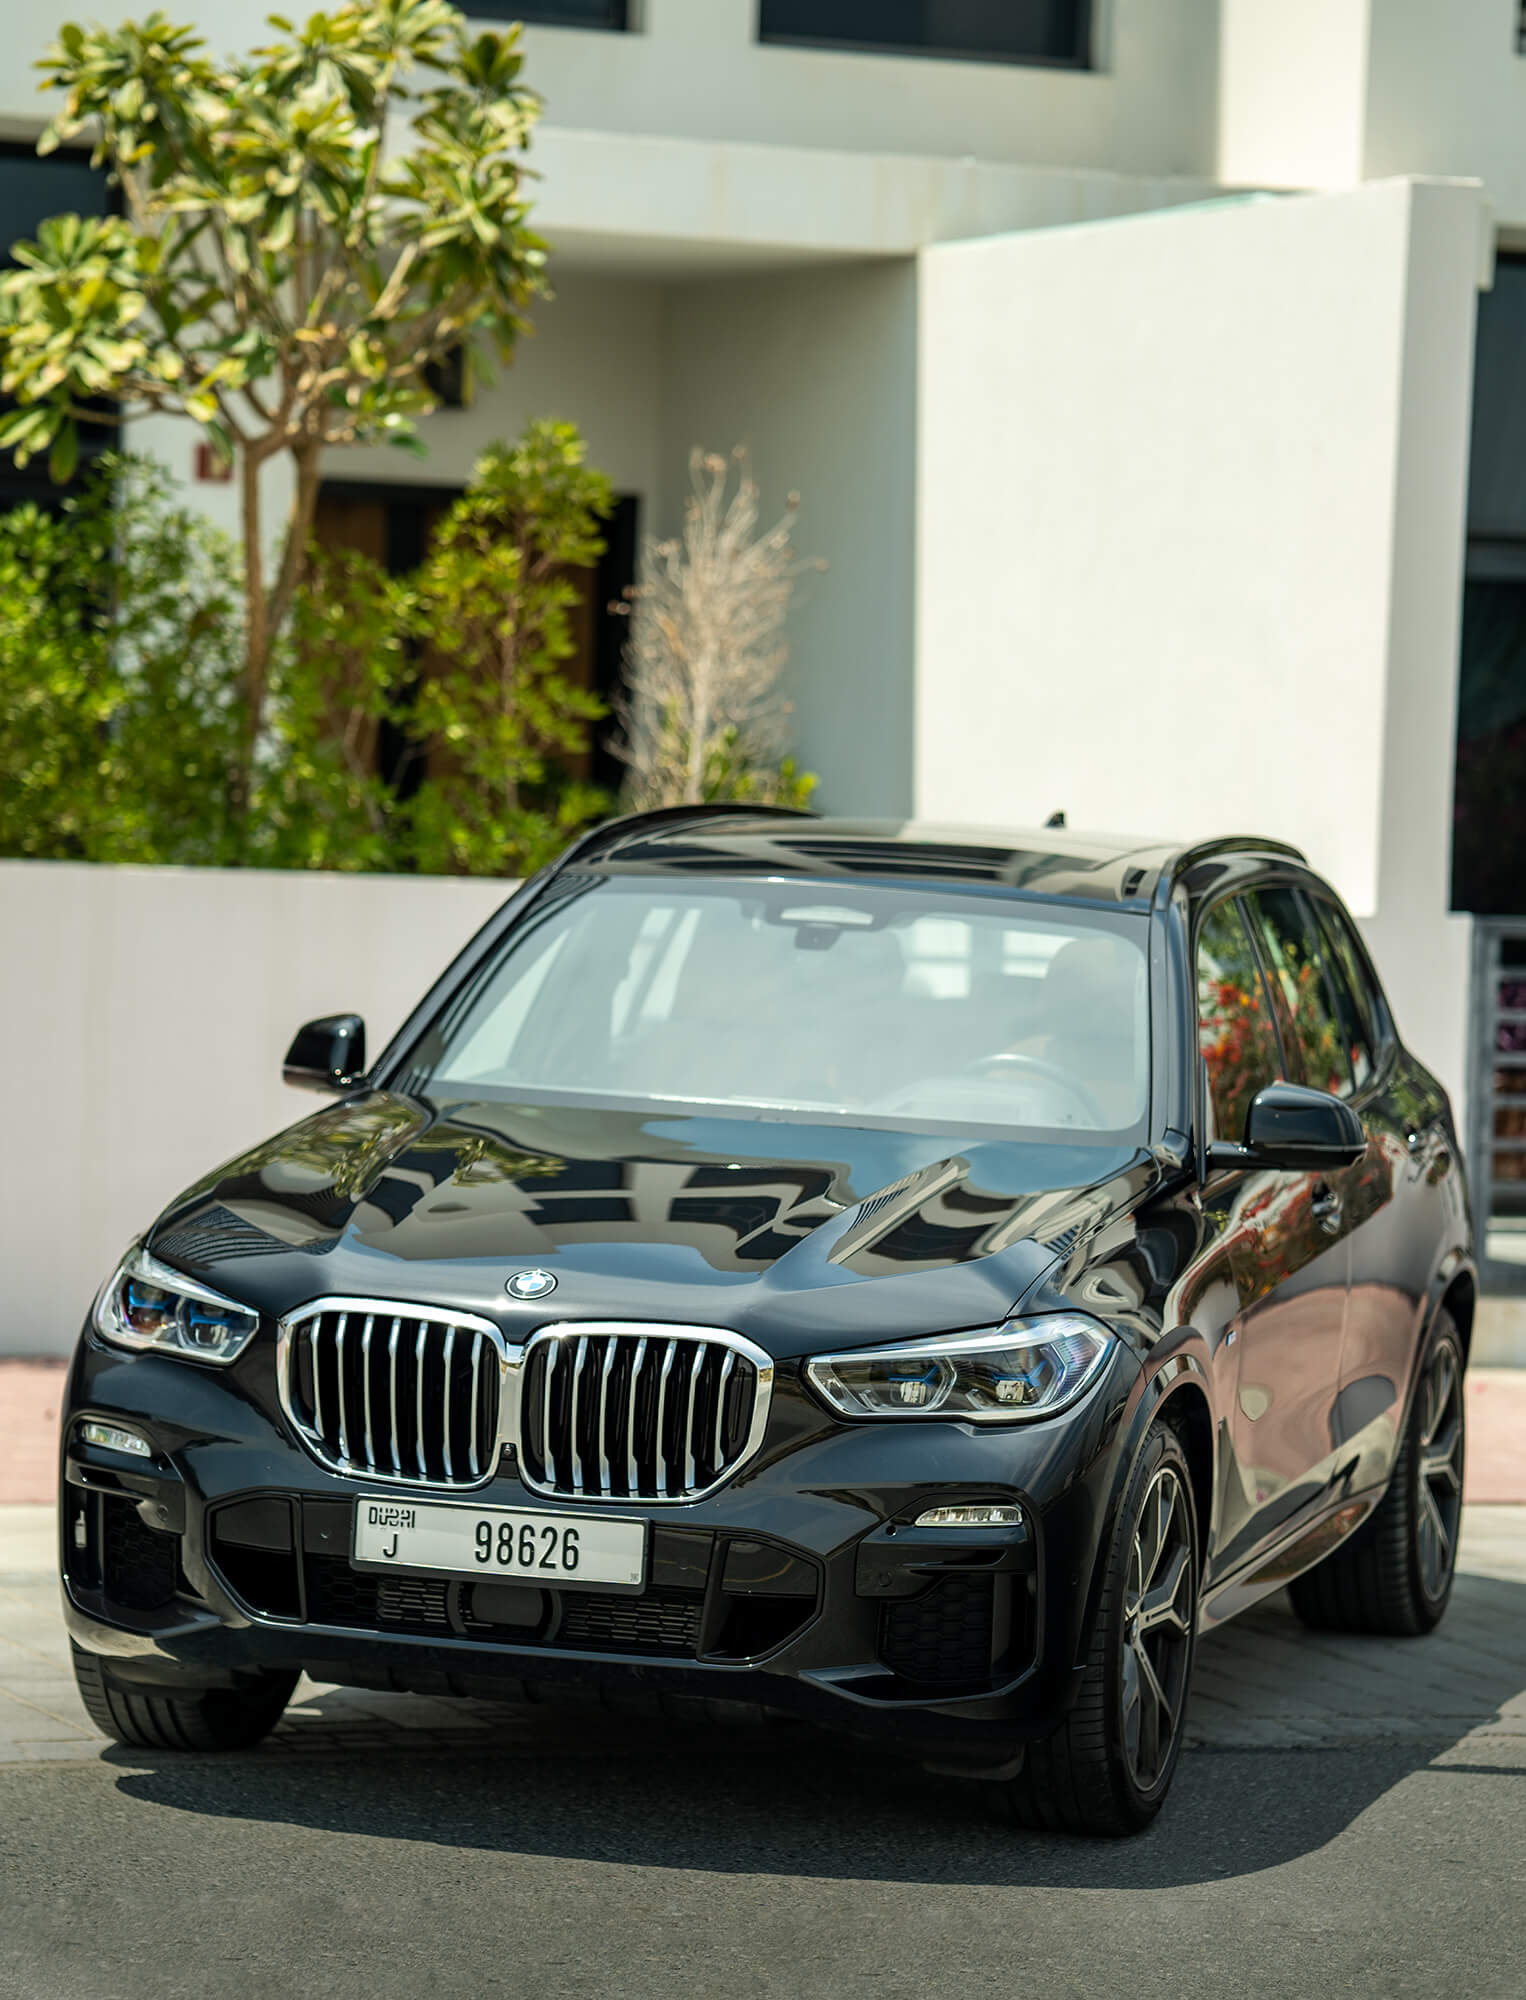 Lej BMW X5 i Dubai